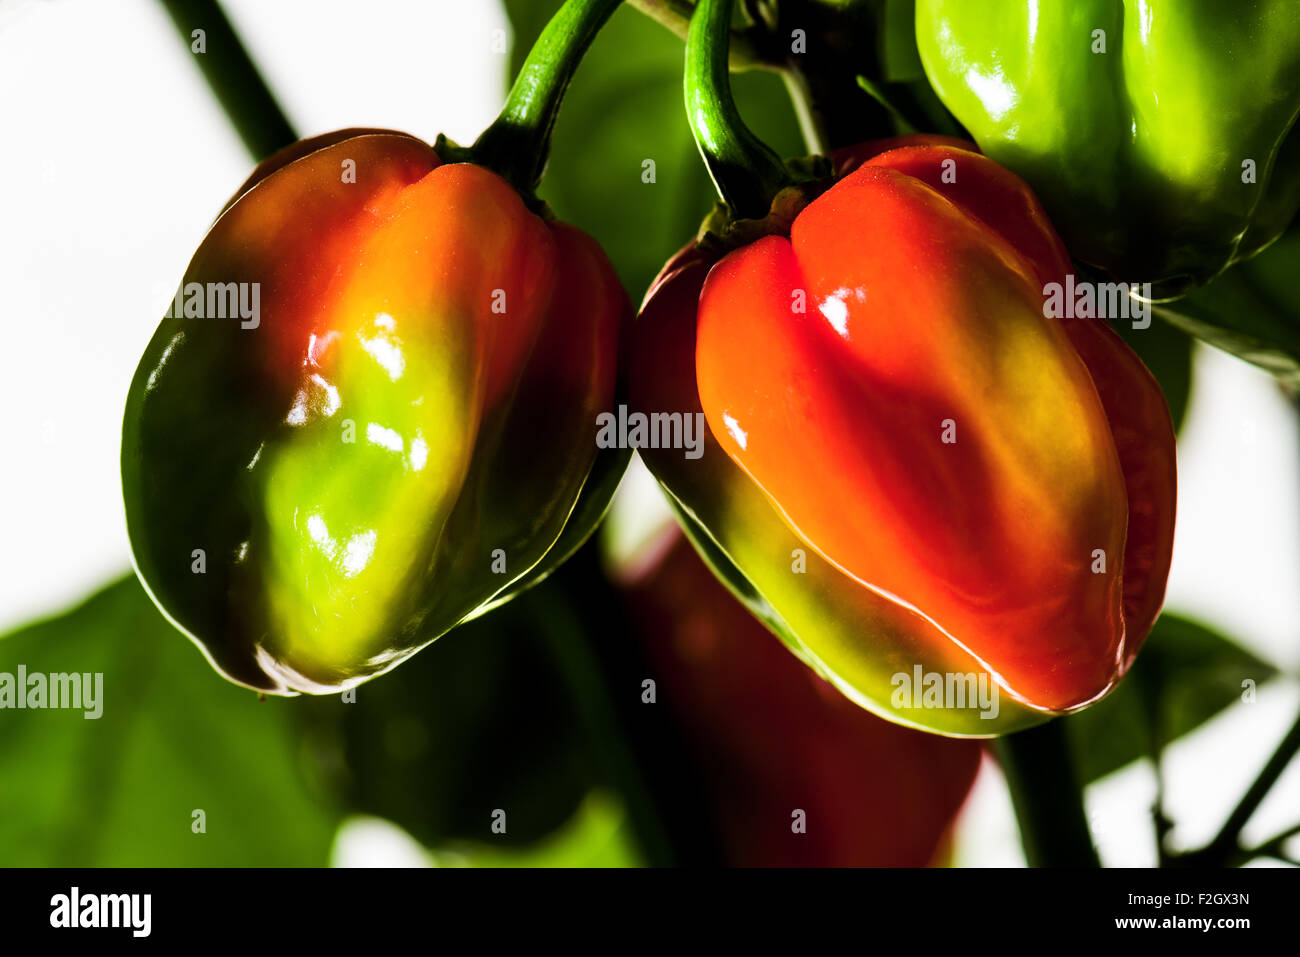 Habanero chili chili hot pepper sulla bussola verde giallo rosso raccolto fresco autunno brillantezza alimentare cuocere spezie piccanti sfondo bianco Foto Stock